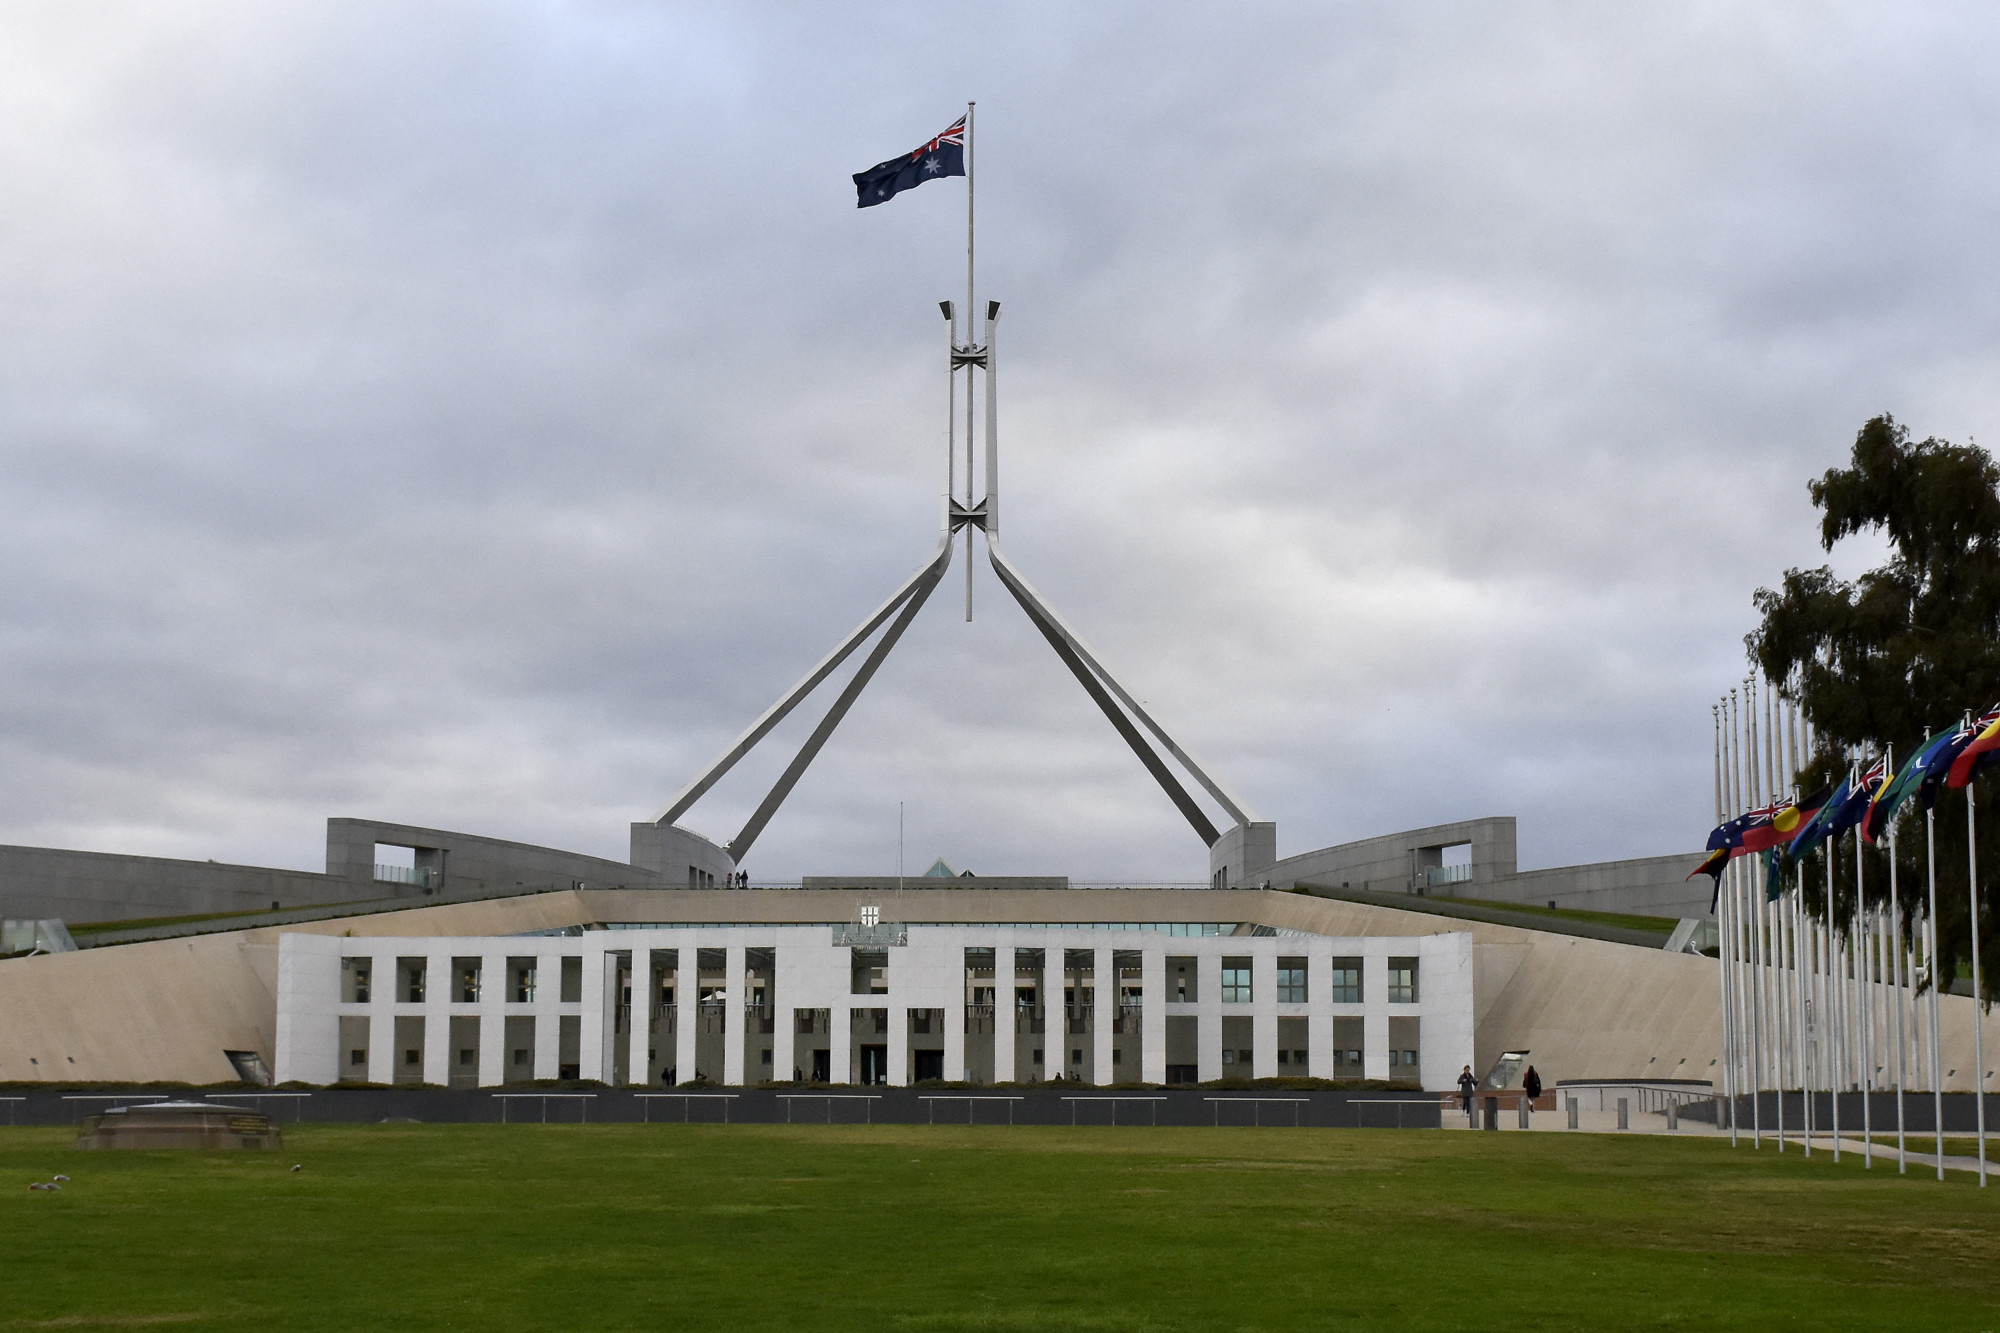 Egy jelentés szerint kötelességszegést követett el az ausztrál ügyész, aki a parlamenti szexuális botrány ügyében járt el